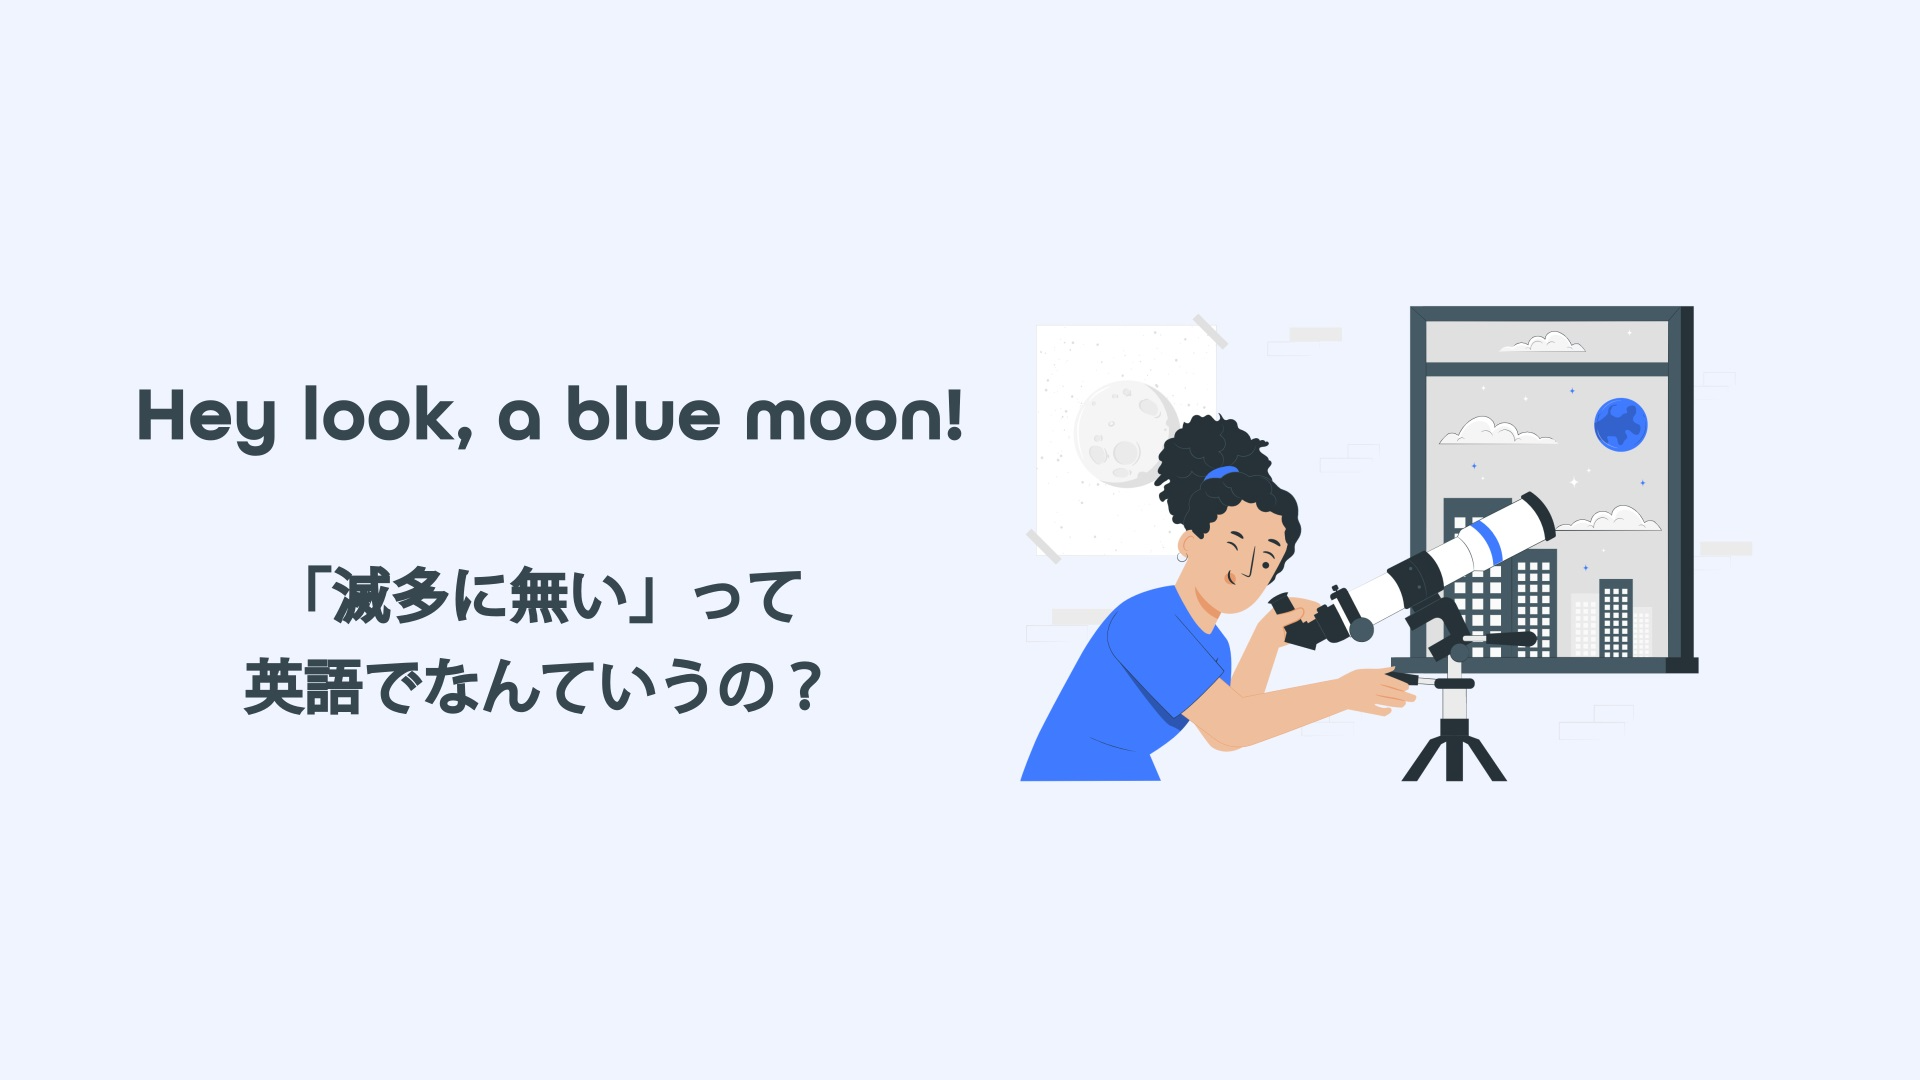 Hey look a blue moon!「滅多に無い」って英語でなんていうの？